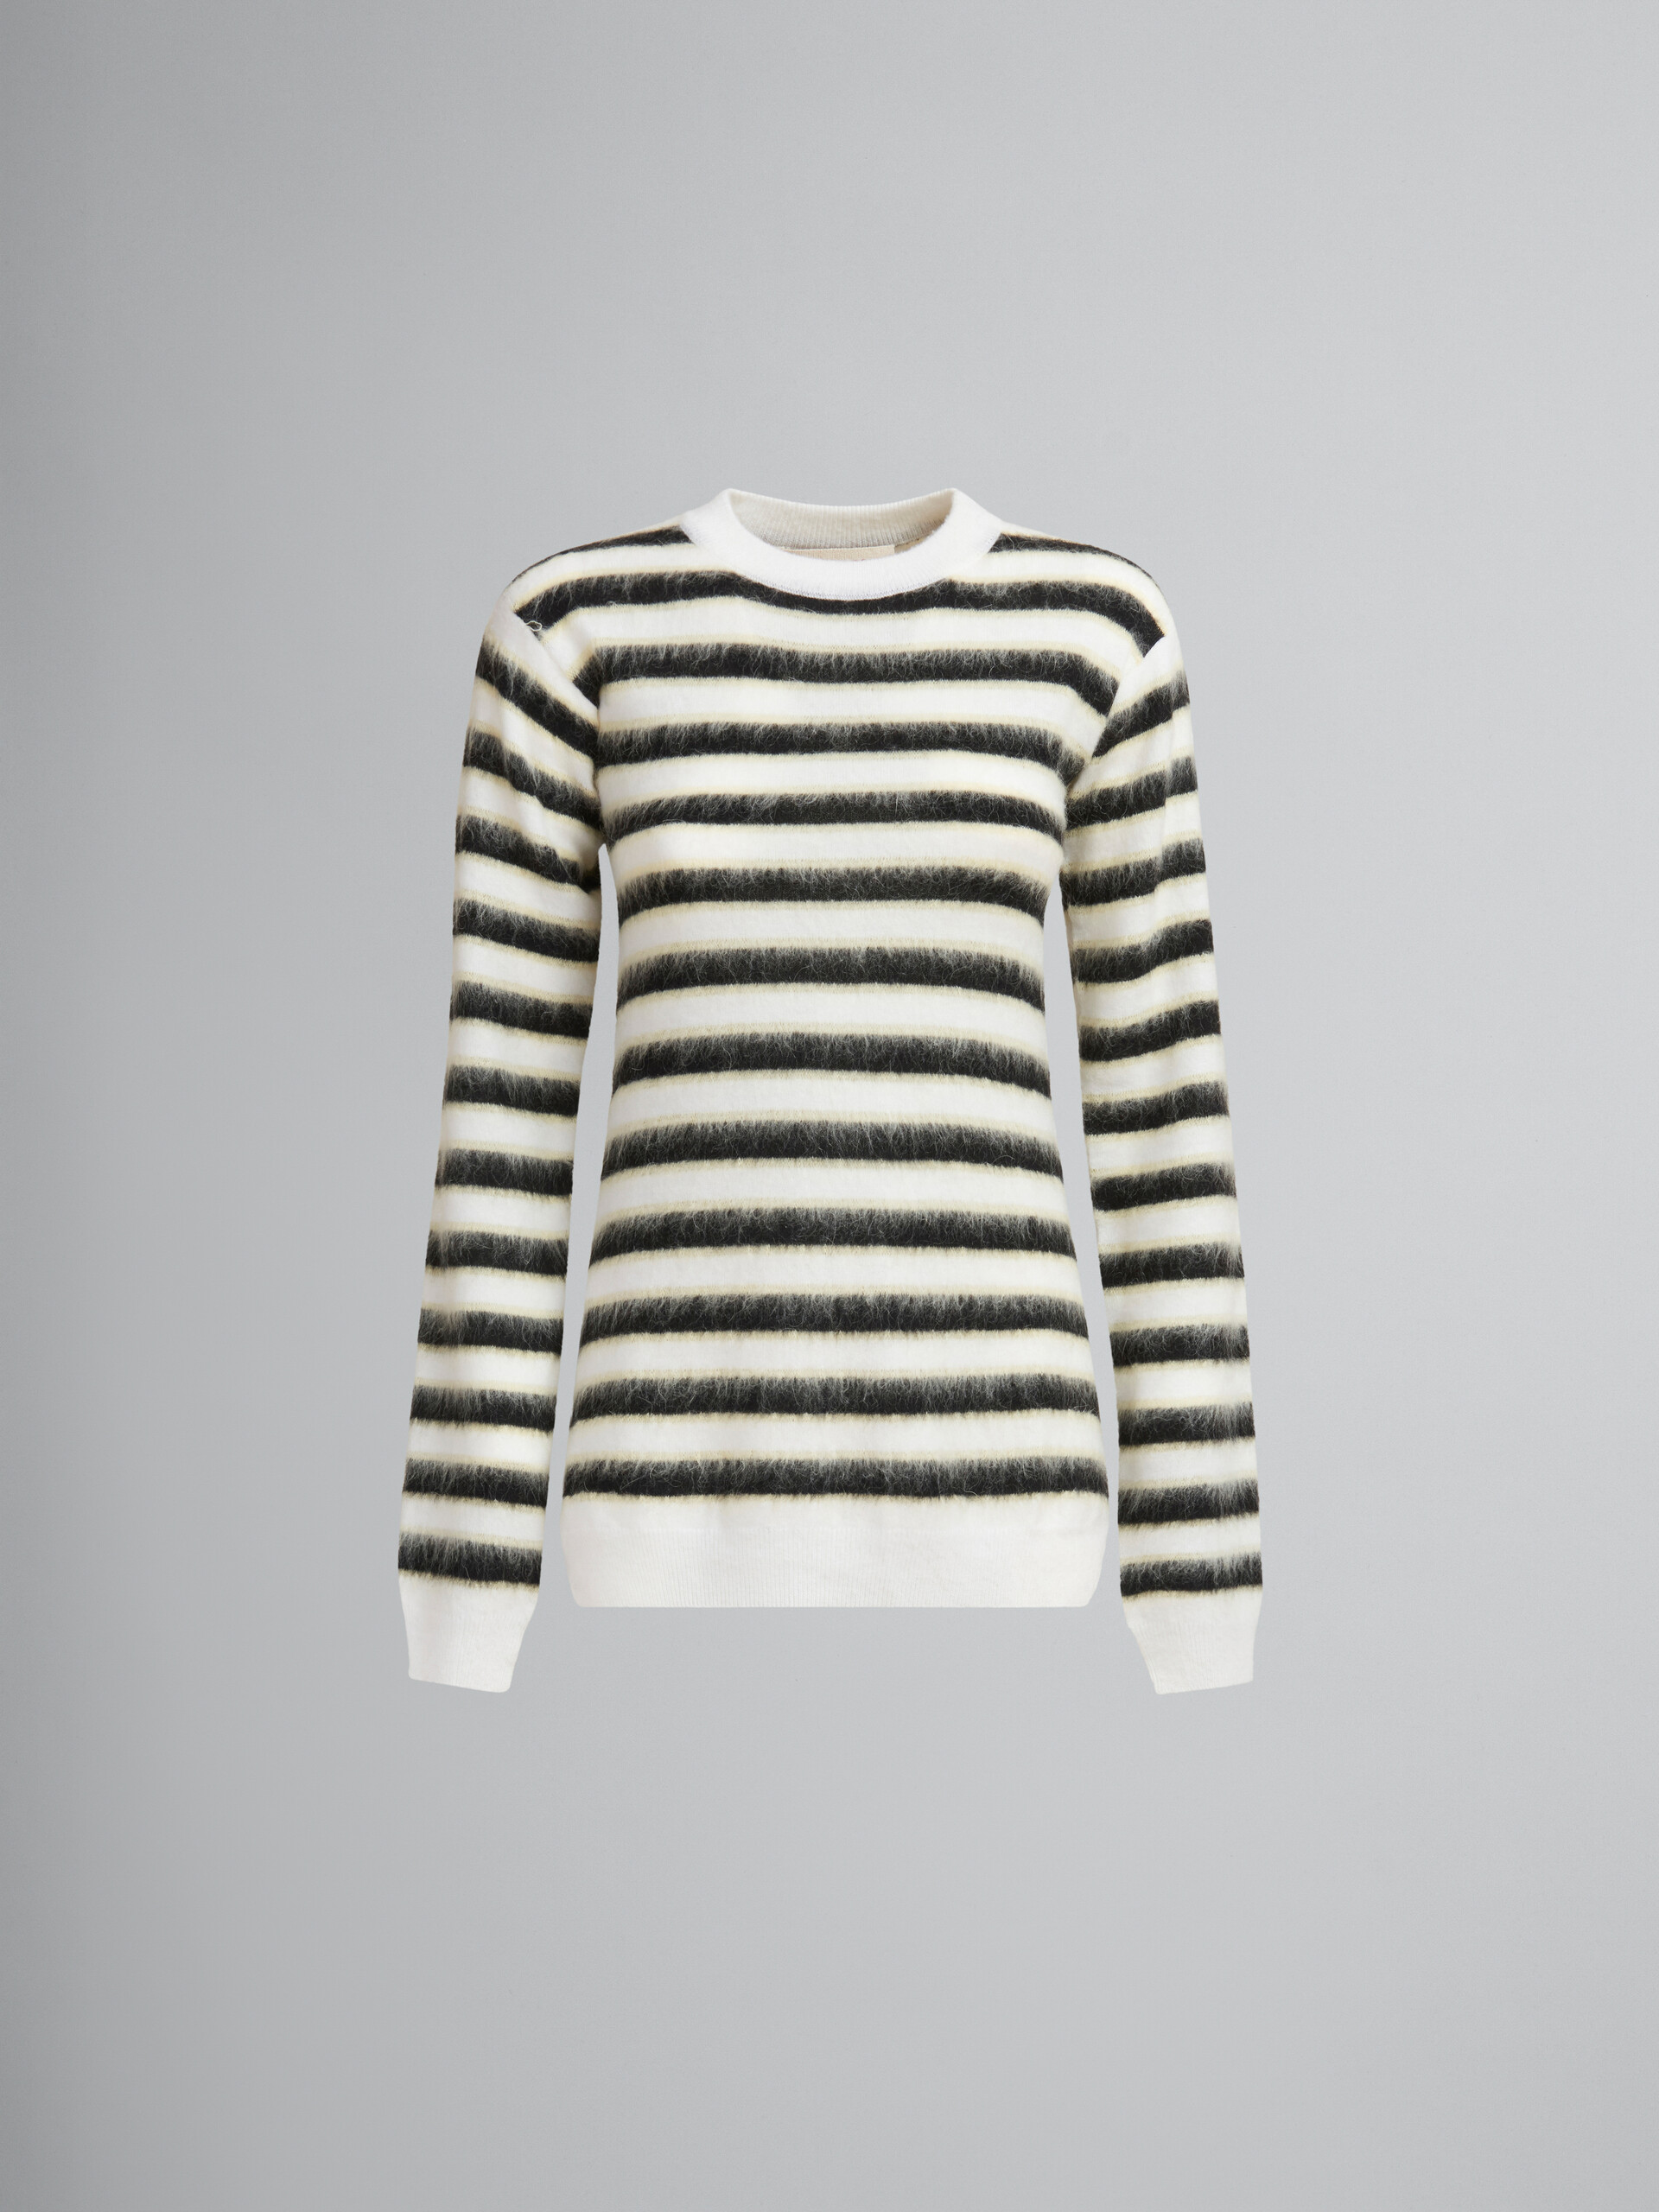 Jersey negro y blanco de lana y mohair a rayas - jerseys - Image 1